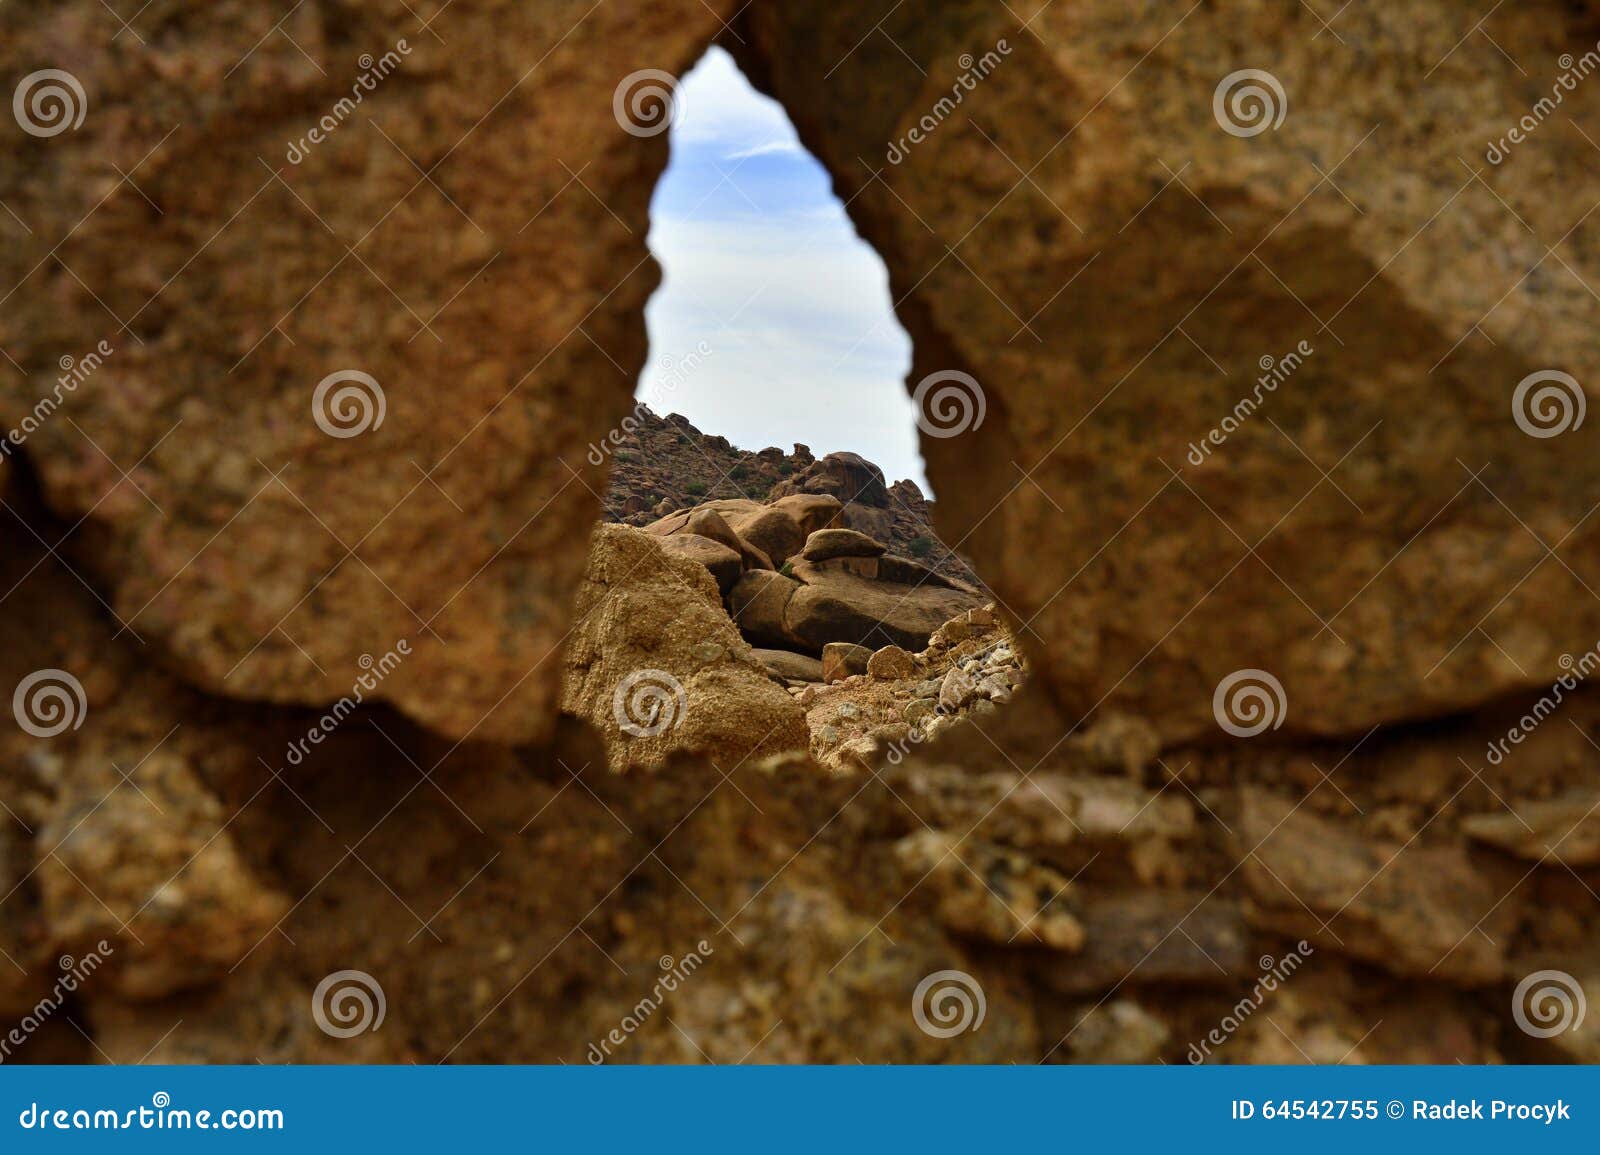 rocks in tafroute